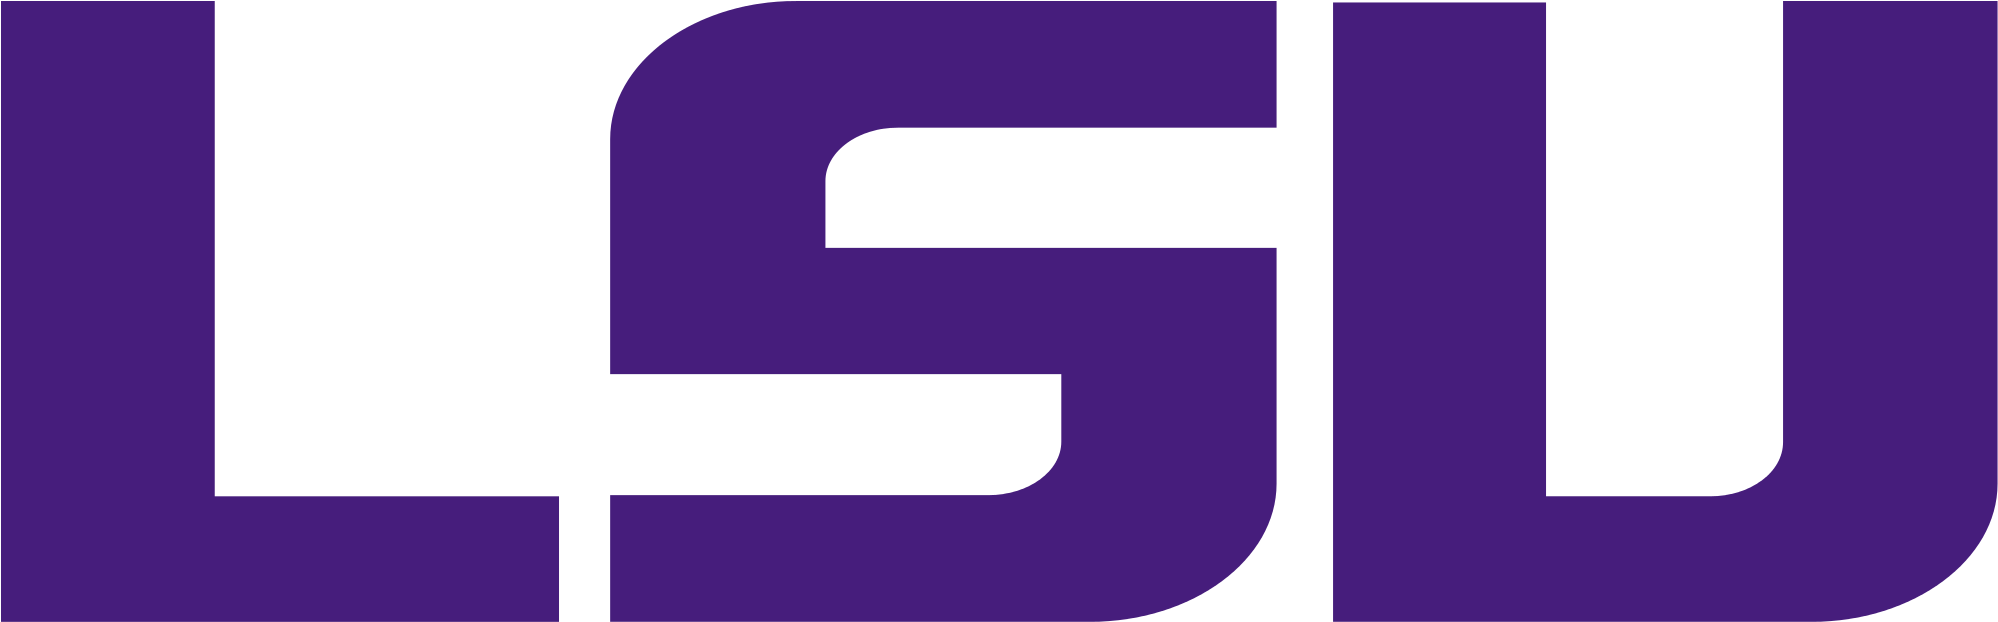 Lsu Logo - Louisiana State University (2300x750)